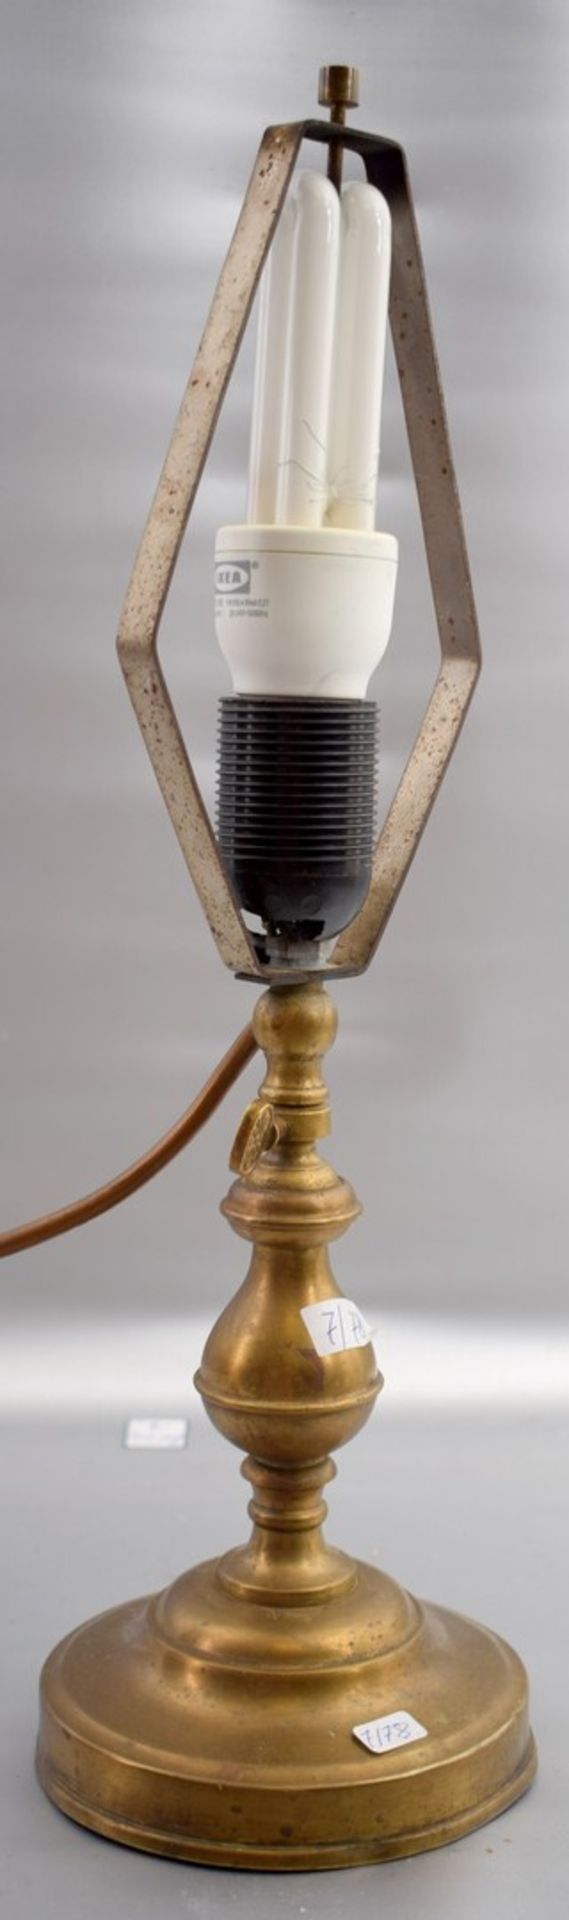 Tischlampe 1-lichtig, runder Messingfuß und -schaft, höhenverstellbar, Fassung besch., H 40 cm